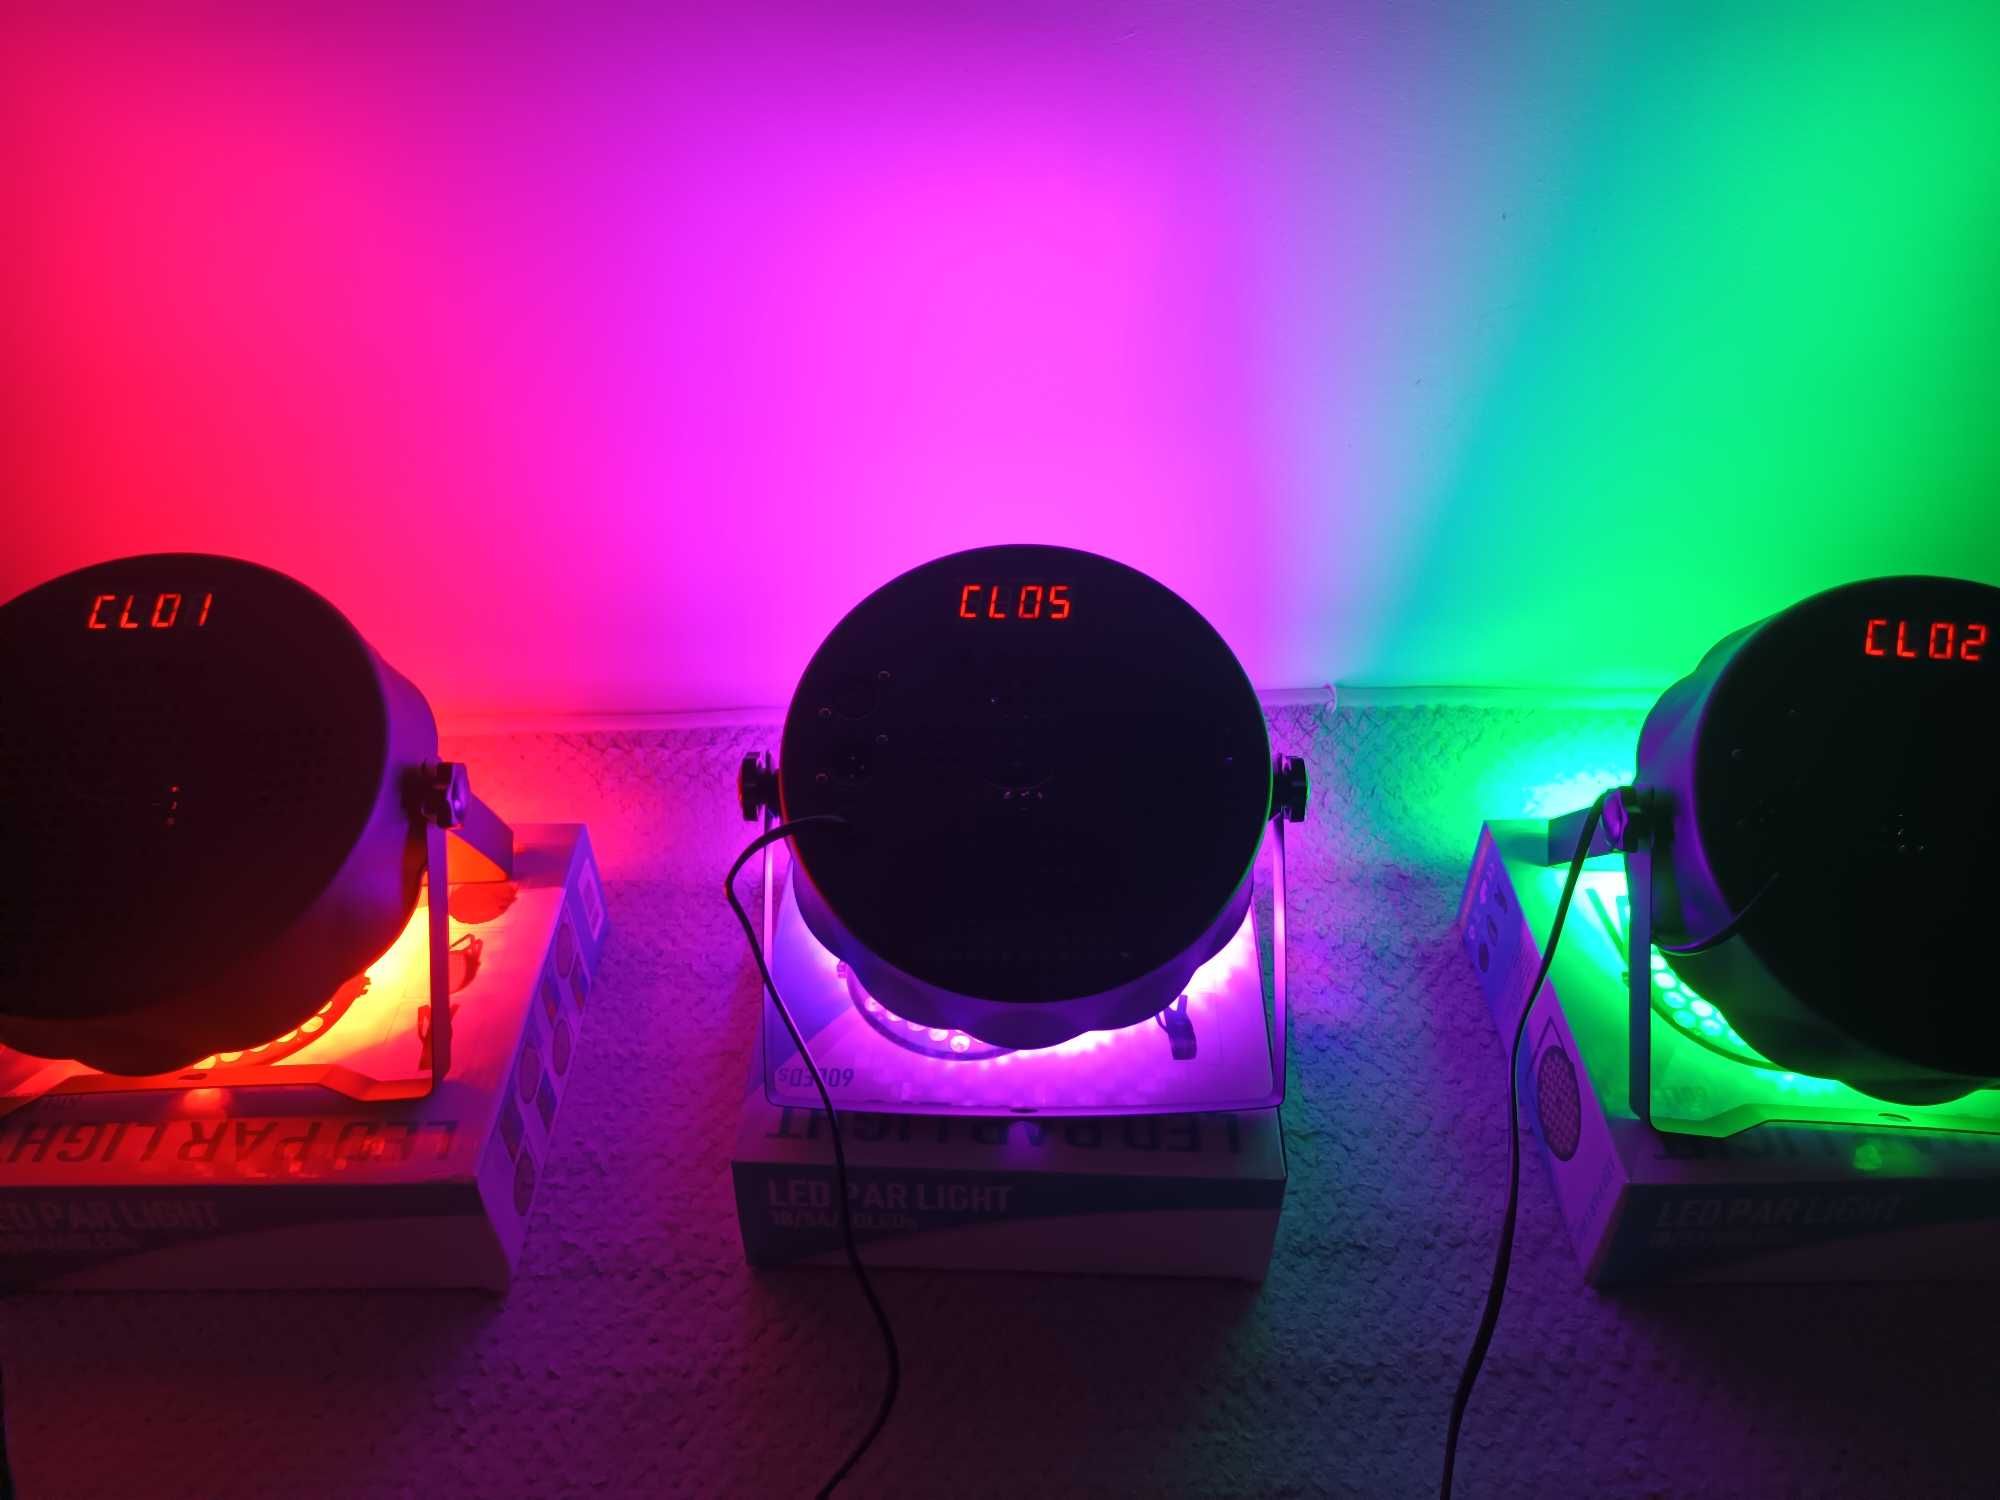 Orga de lumini Petrecere - Jocuri de culori Club 54 LED-uri Full Color